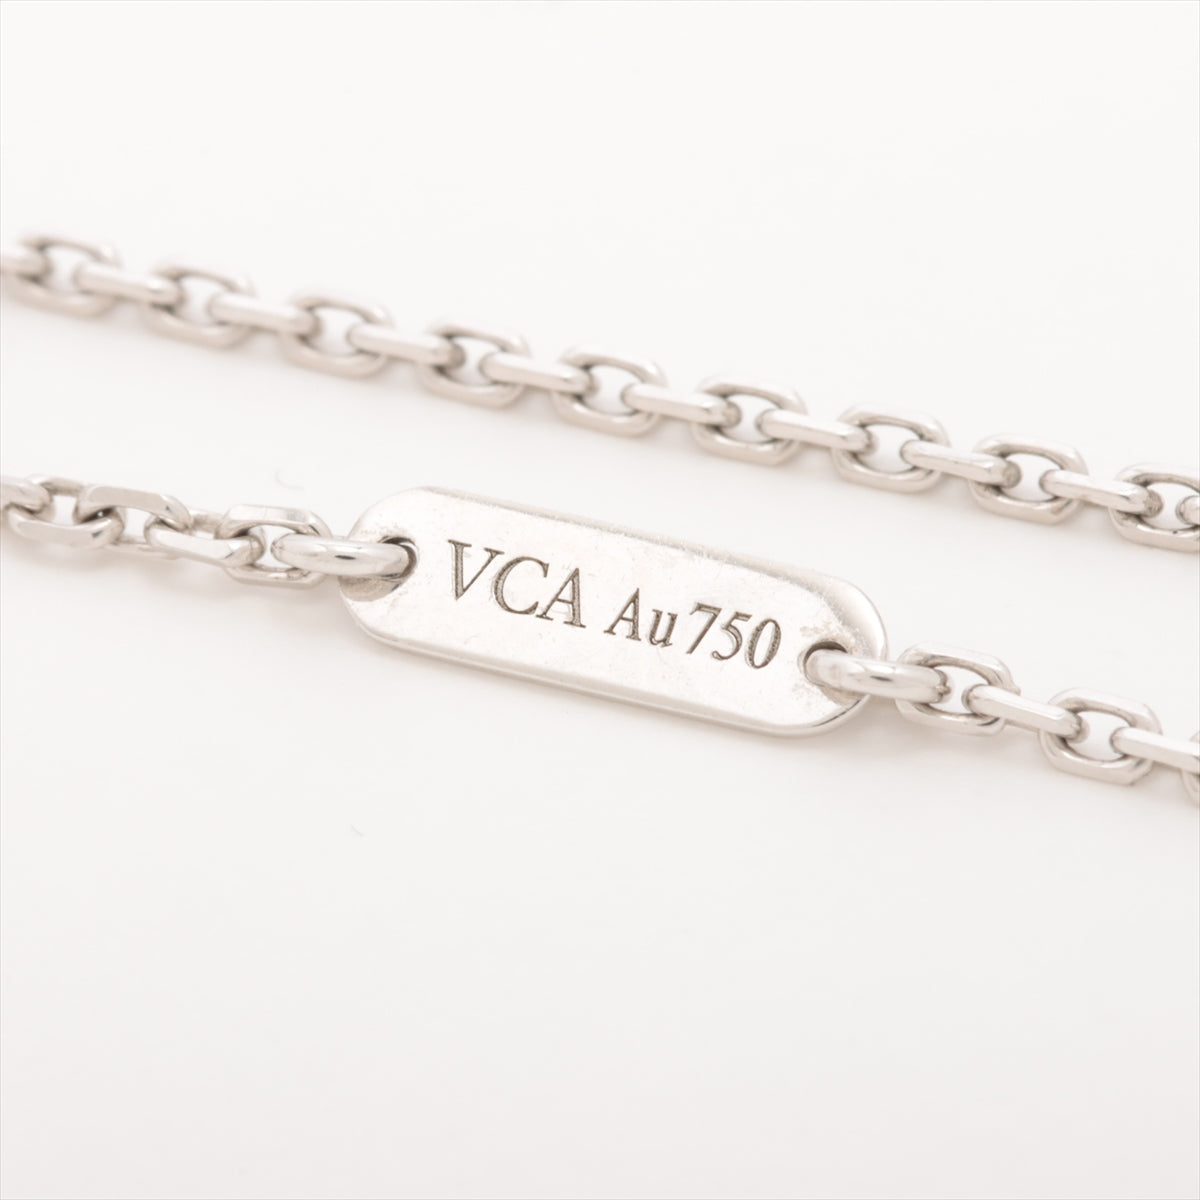 ヴァンクリーフ&アーペル コスモスクリップ ミディアム オニキス ダイヤ ネックレス 750(WG) 12.4g